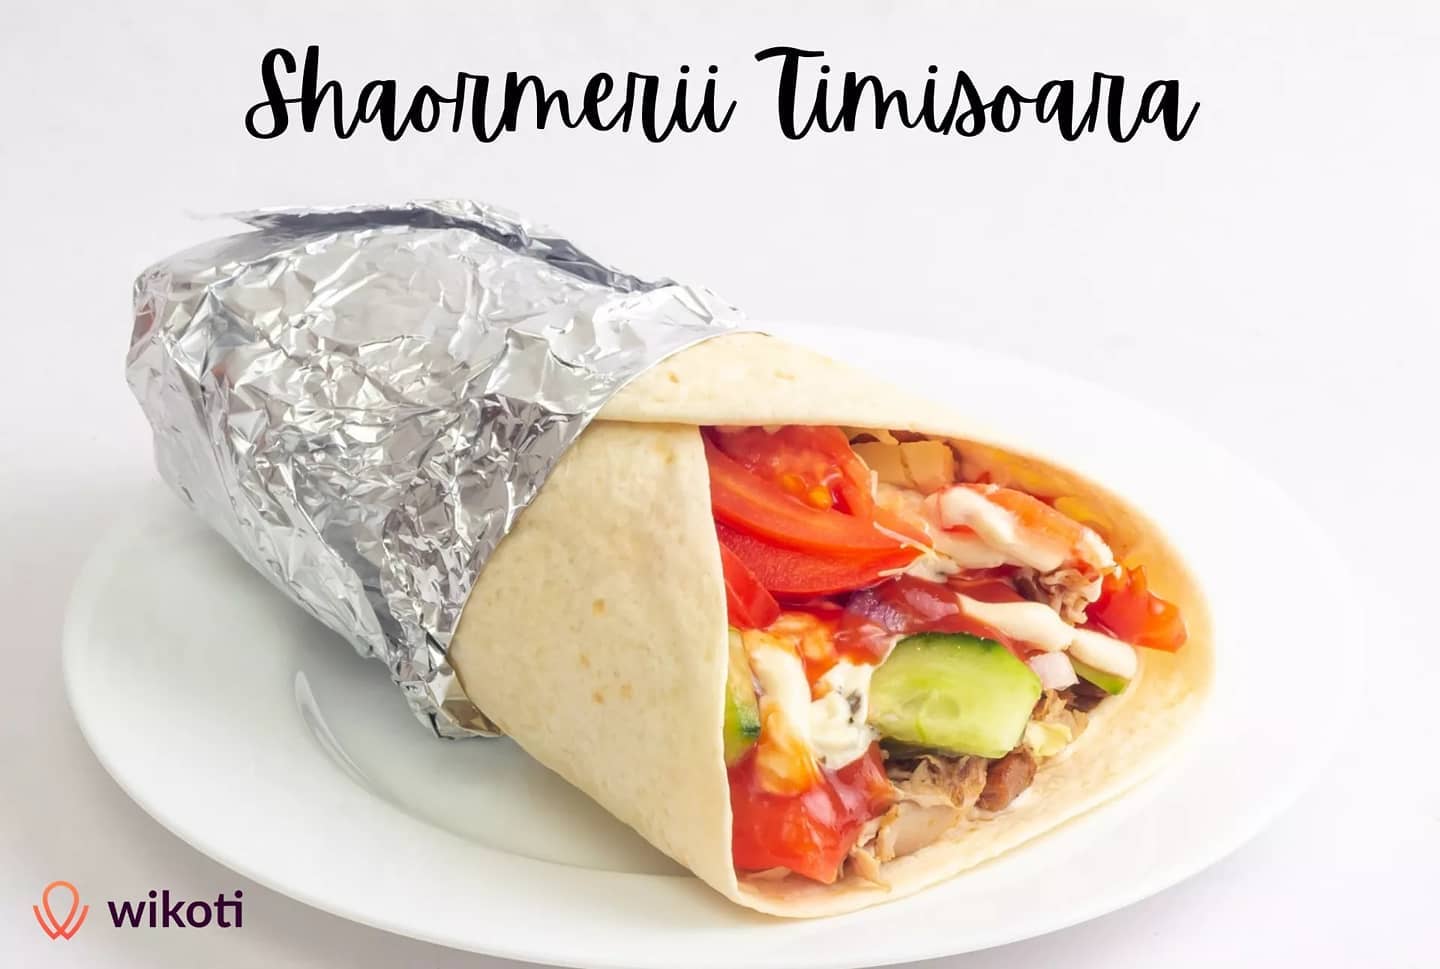 🙋 5 localuri recomandate cu cele mai bune preparate tip shaorma din Timisoara! 

Hai pe blog!

⭐ Citeste noul nostru articol despre cele mai populare locuri de unde poti cumpara shaorma.

In plus, poti vedea informatii despre:

✅ Meniu

📋 Orar, adresa

🛵 Optiuni de livrare la domiciliu

🤔 Alte detalii relevante

Te asteptam pe blog.wikoti.com sau link in BIO! 

#shaorma #shawarma #timisoararomania #timisoaracity #timisoara2021 #timisoaratoday #timisoara #localbusiness #recomandari #foodie #foodblog #foodstagram #fooddelivery #food #tastyfood #tastytasty #goodfood #goodvibes #eat #yummyfood #yumyum #instamood #instagram #foodlovers #foodapp #wikoti